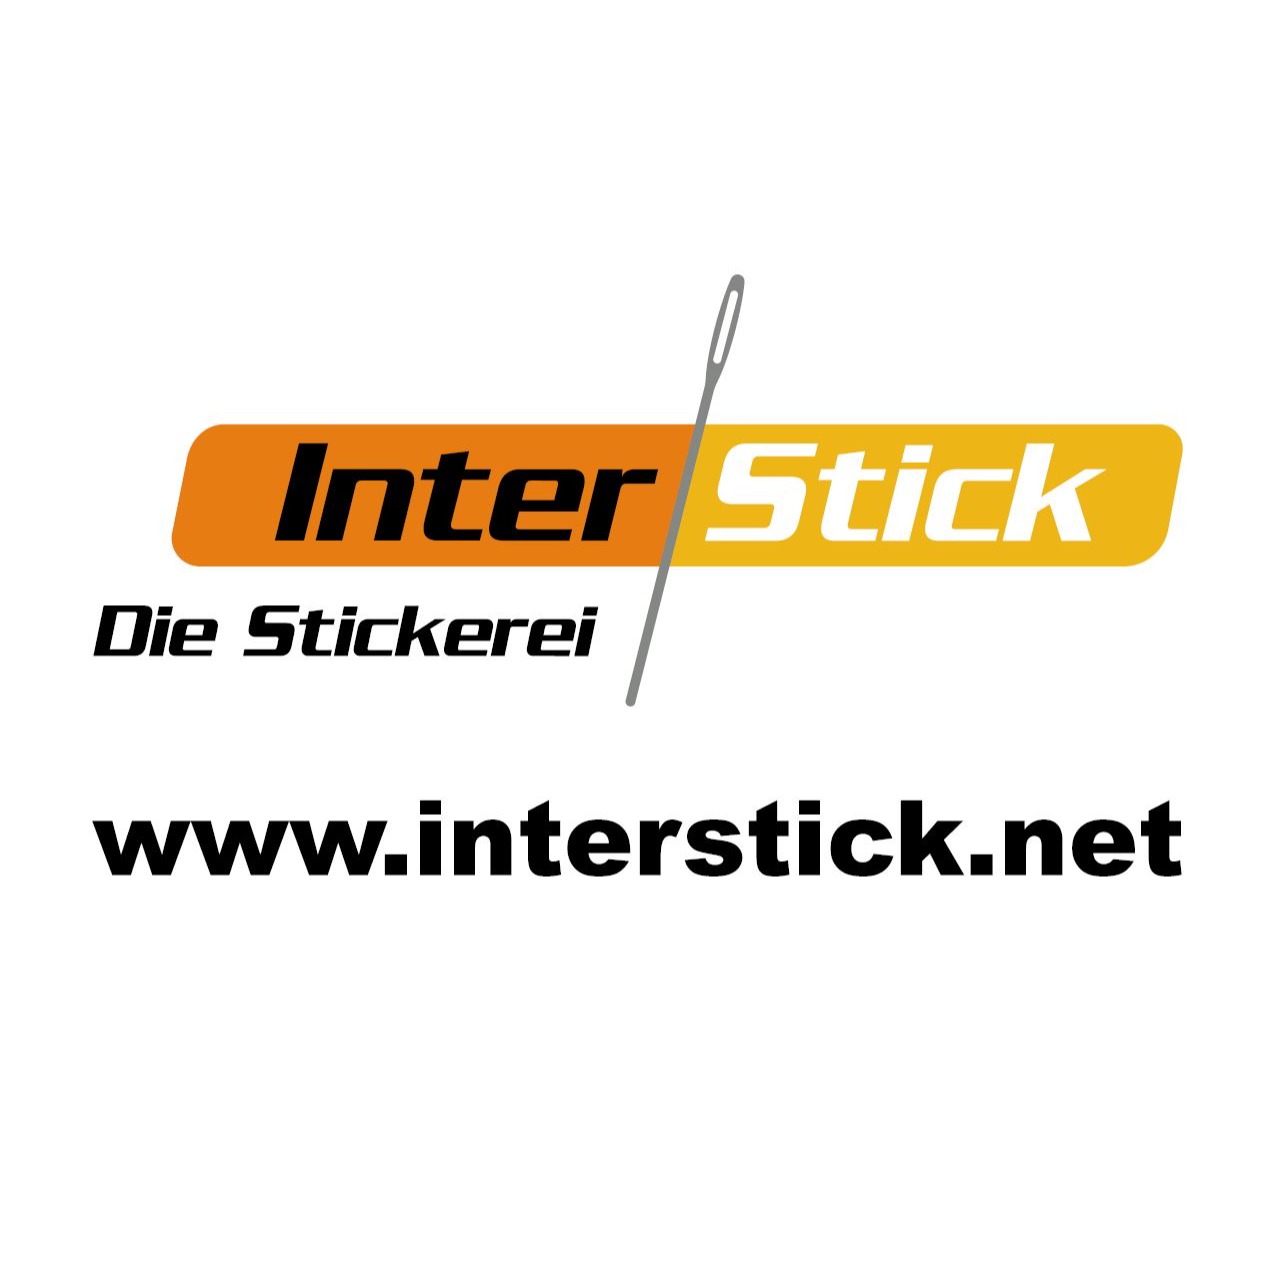 InterStick Die Stickerei UG Logo